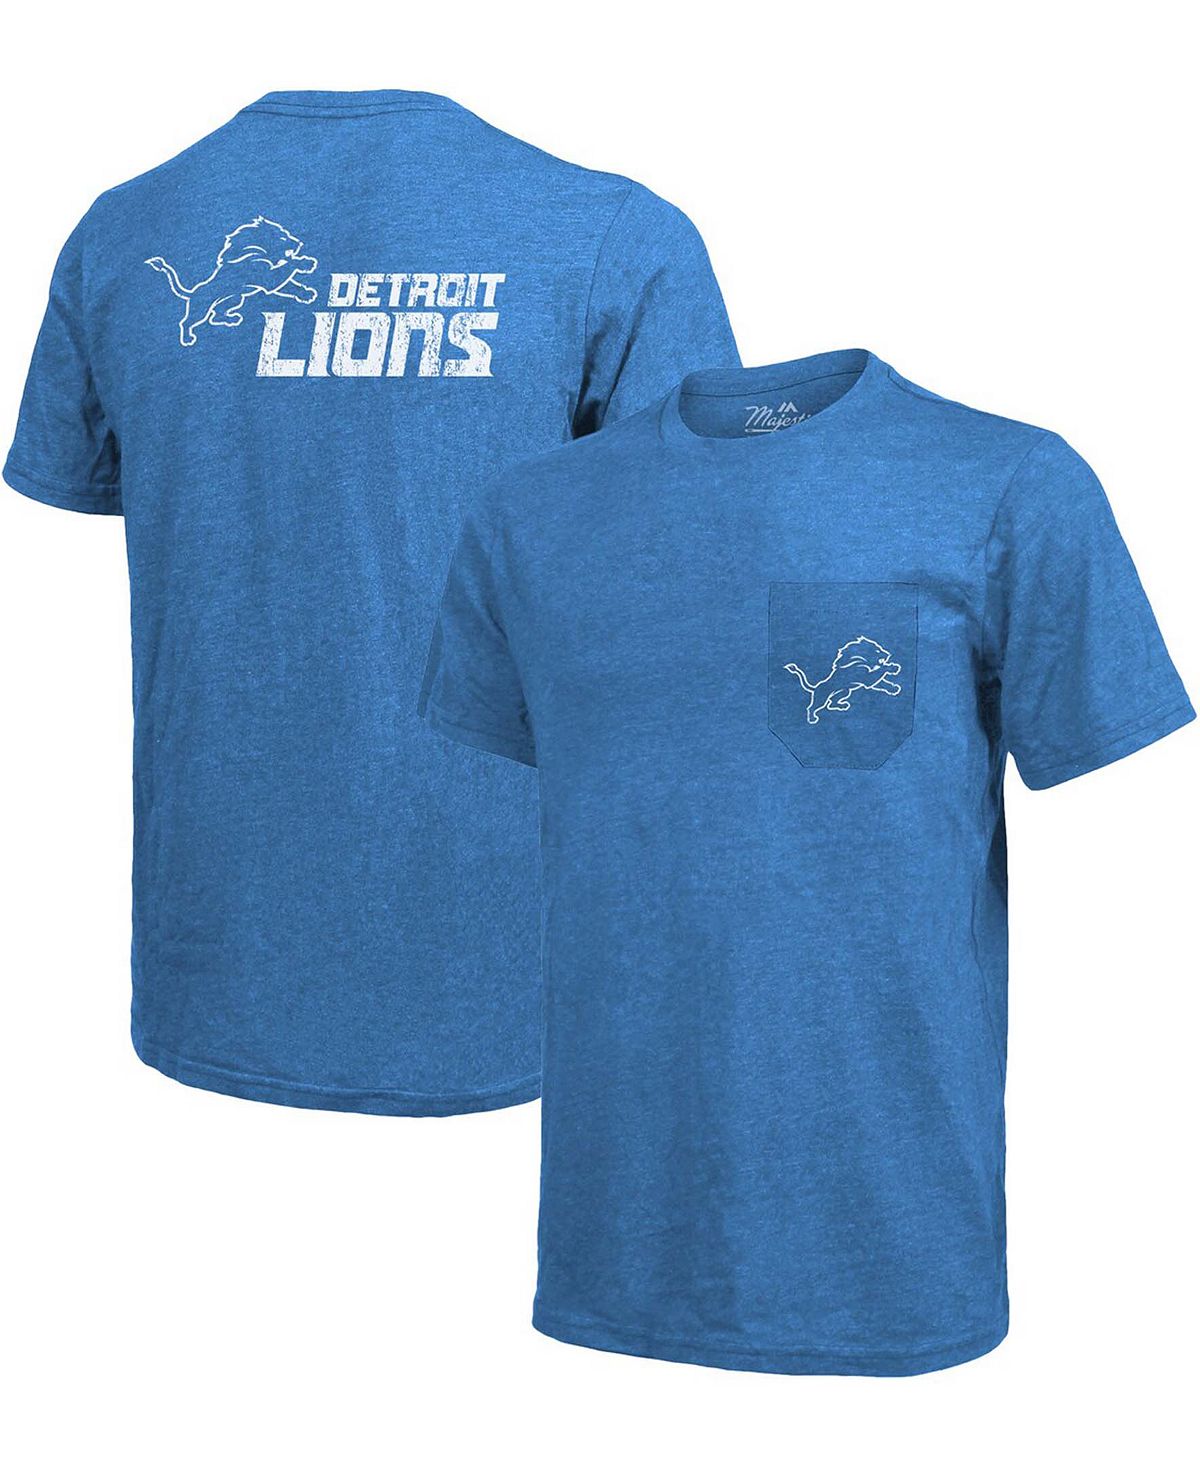 Футболка detroit lions tri-blend pocket - синий Majestic, синий футболка с карманами tri blend threads cleveland browns коричневый majestic